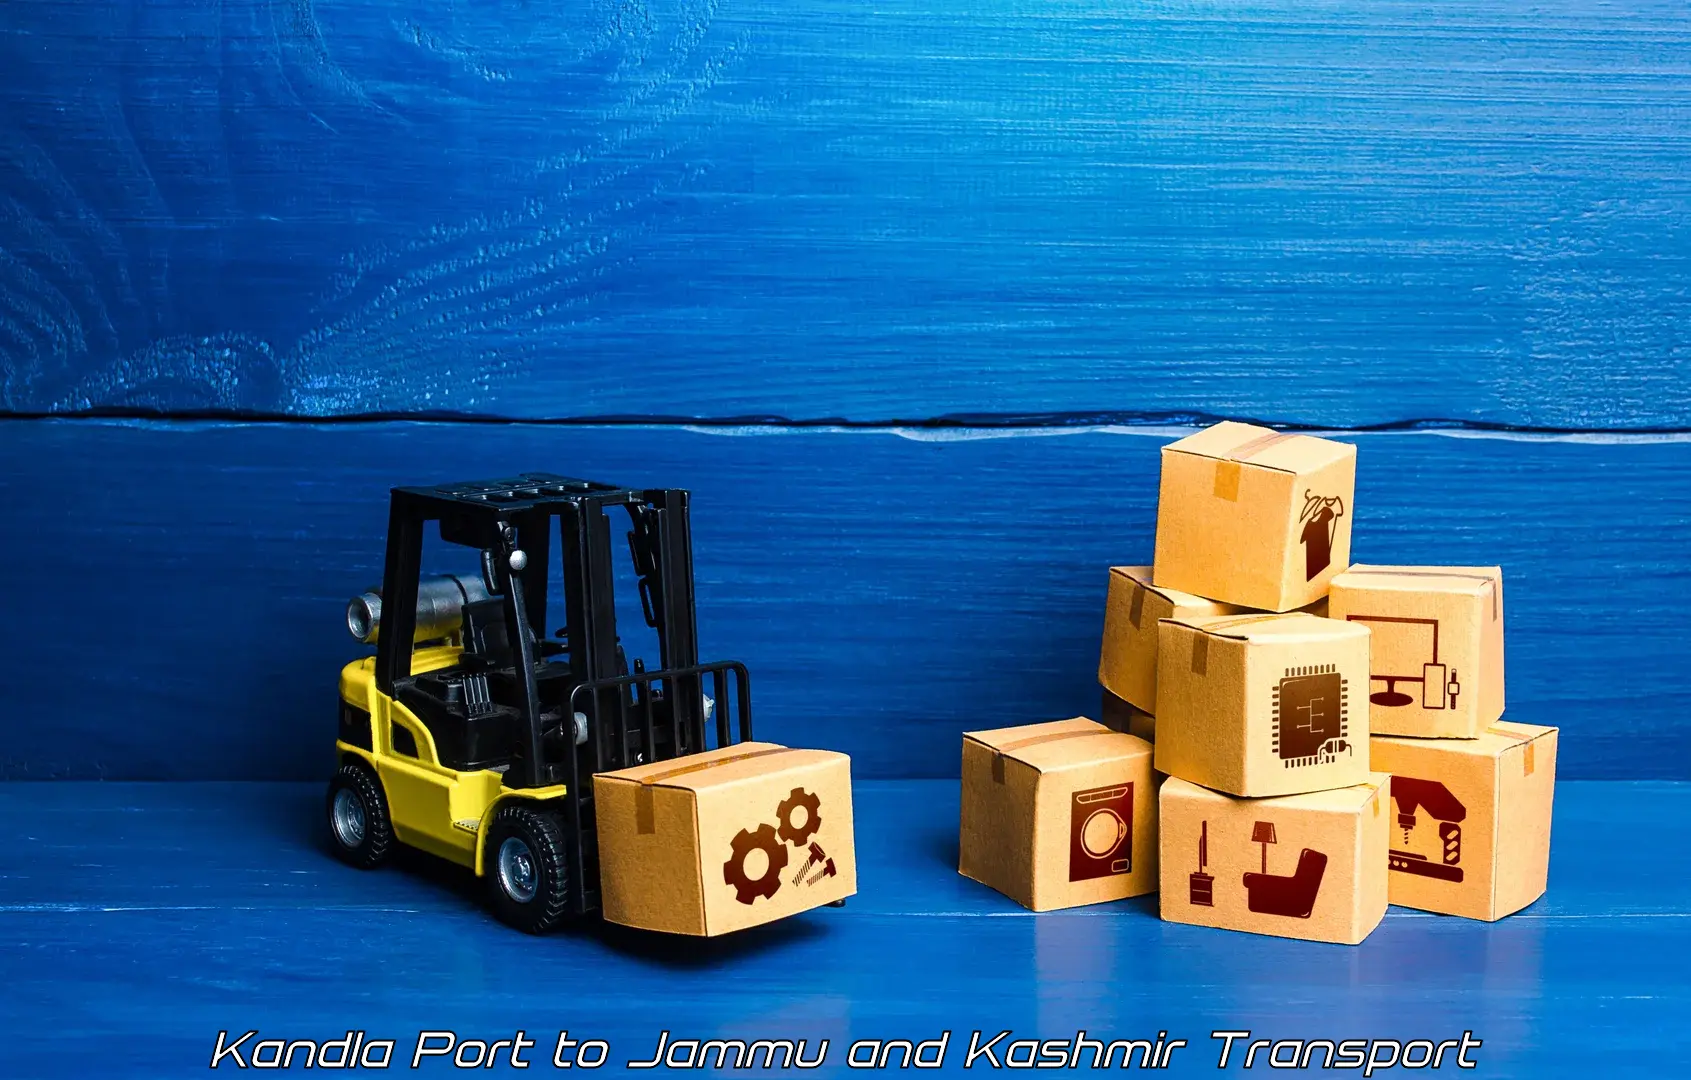 Container transport service Kandla Port to Kargil